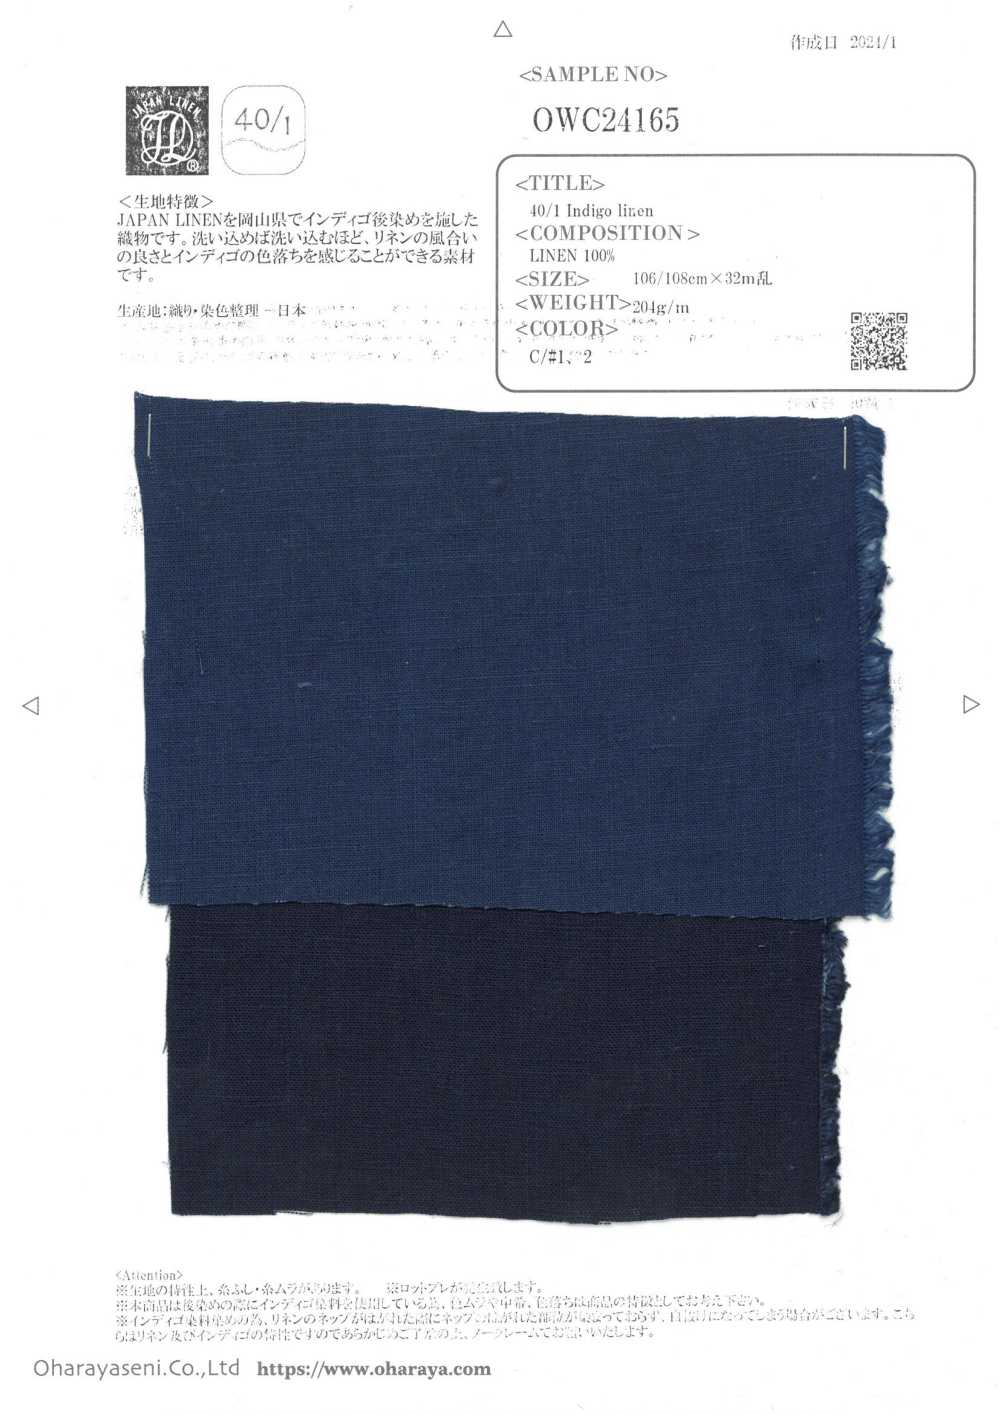 OWC24165 40/1 Indigo linen[生地] 小原屋繊維